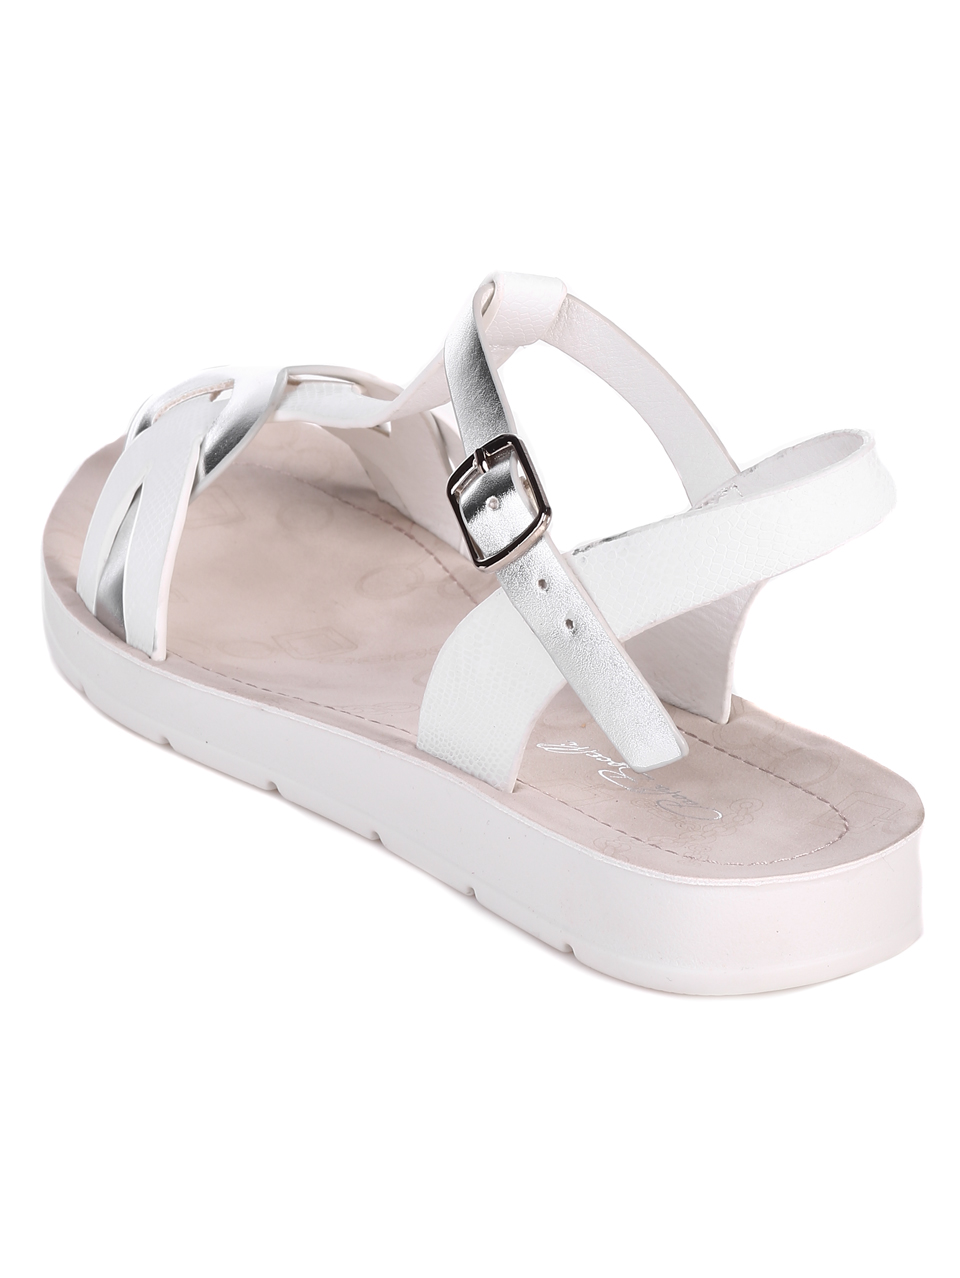 Ежедневни дамски равни сандали в бяло 4F-22215 white